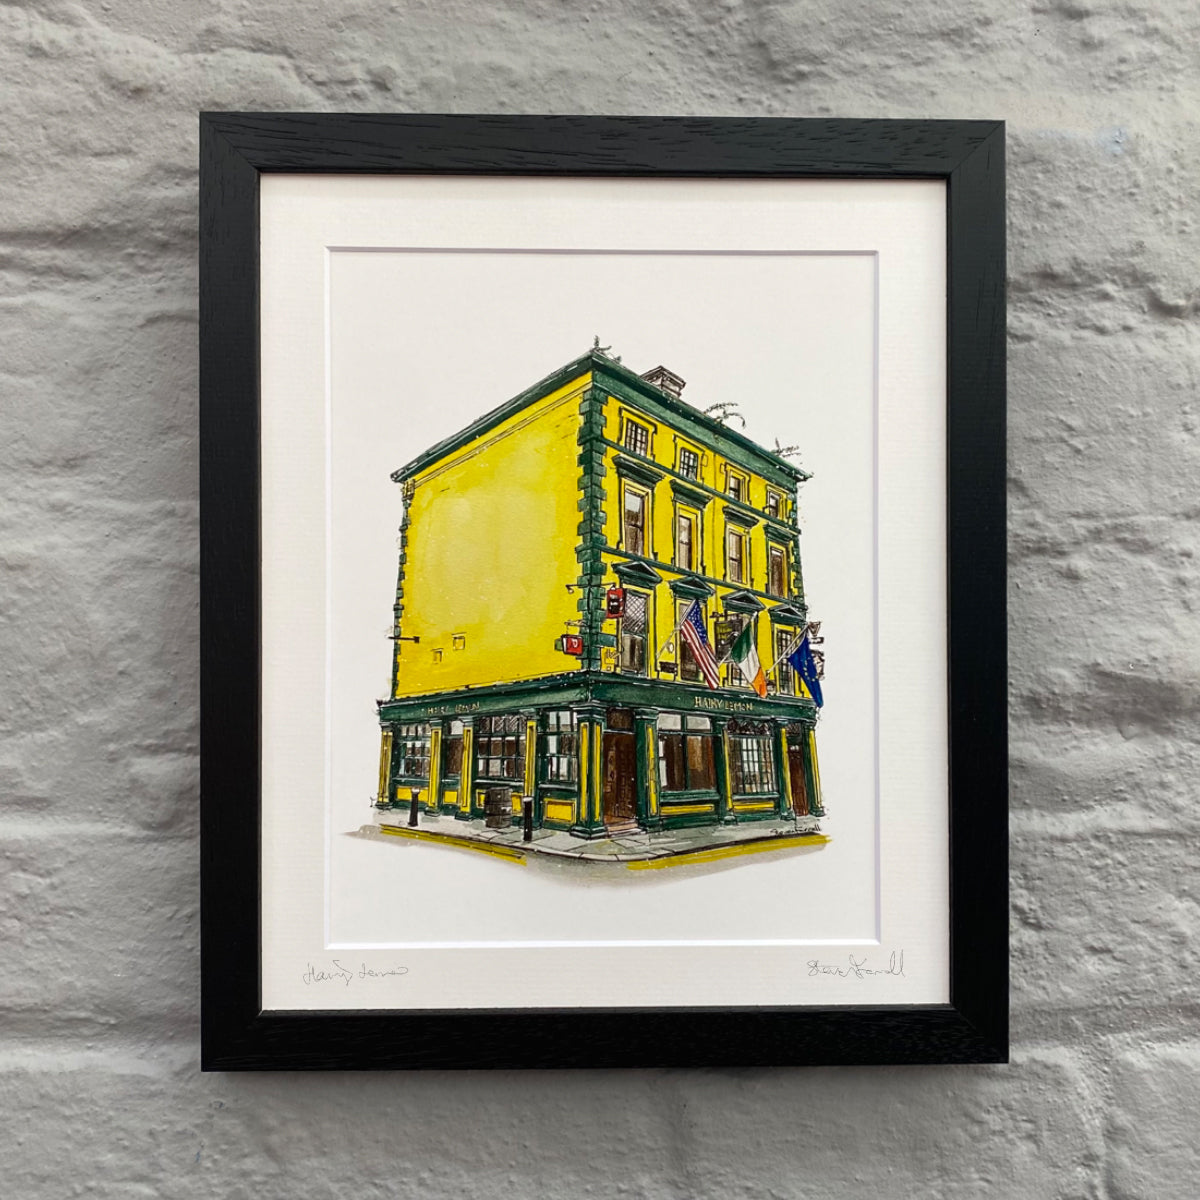 Hairy-Lemon-pub-Dublin-art-framed